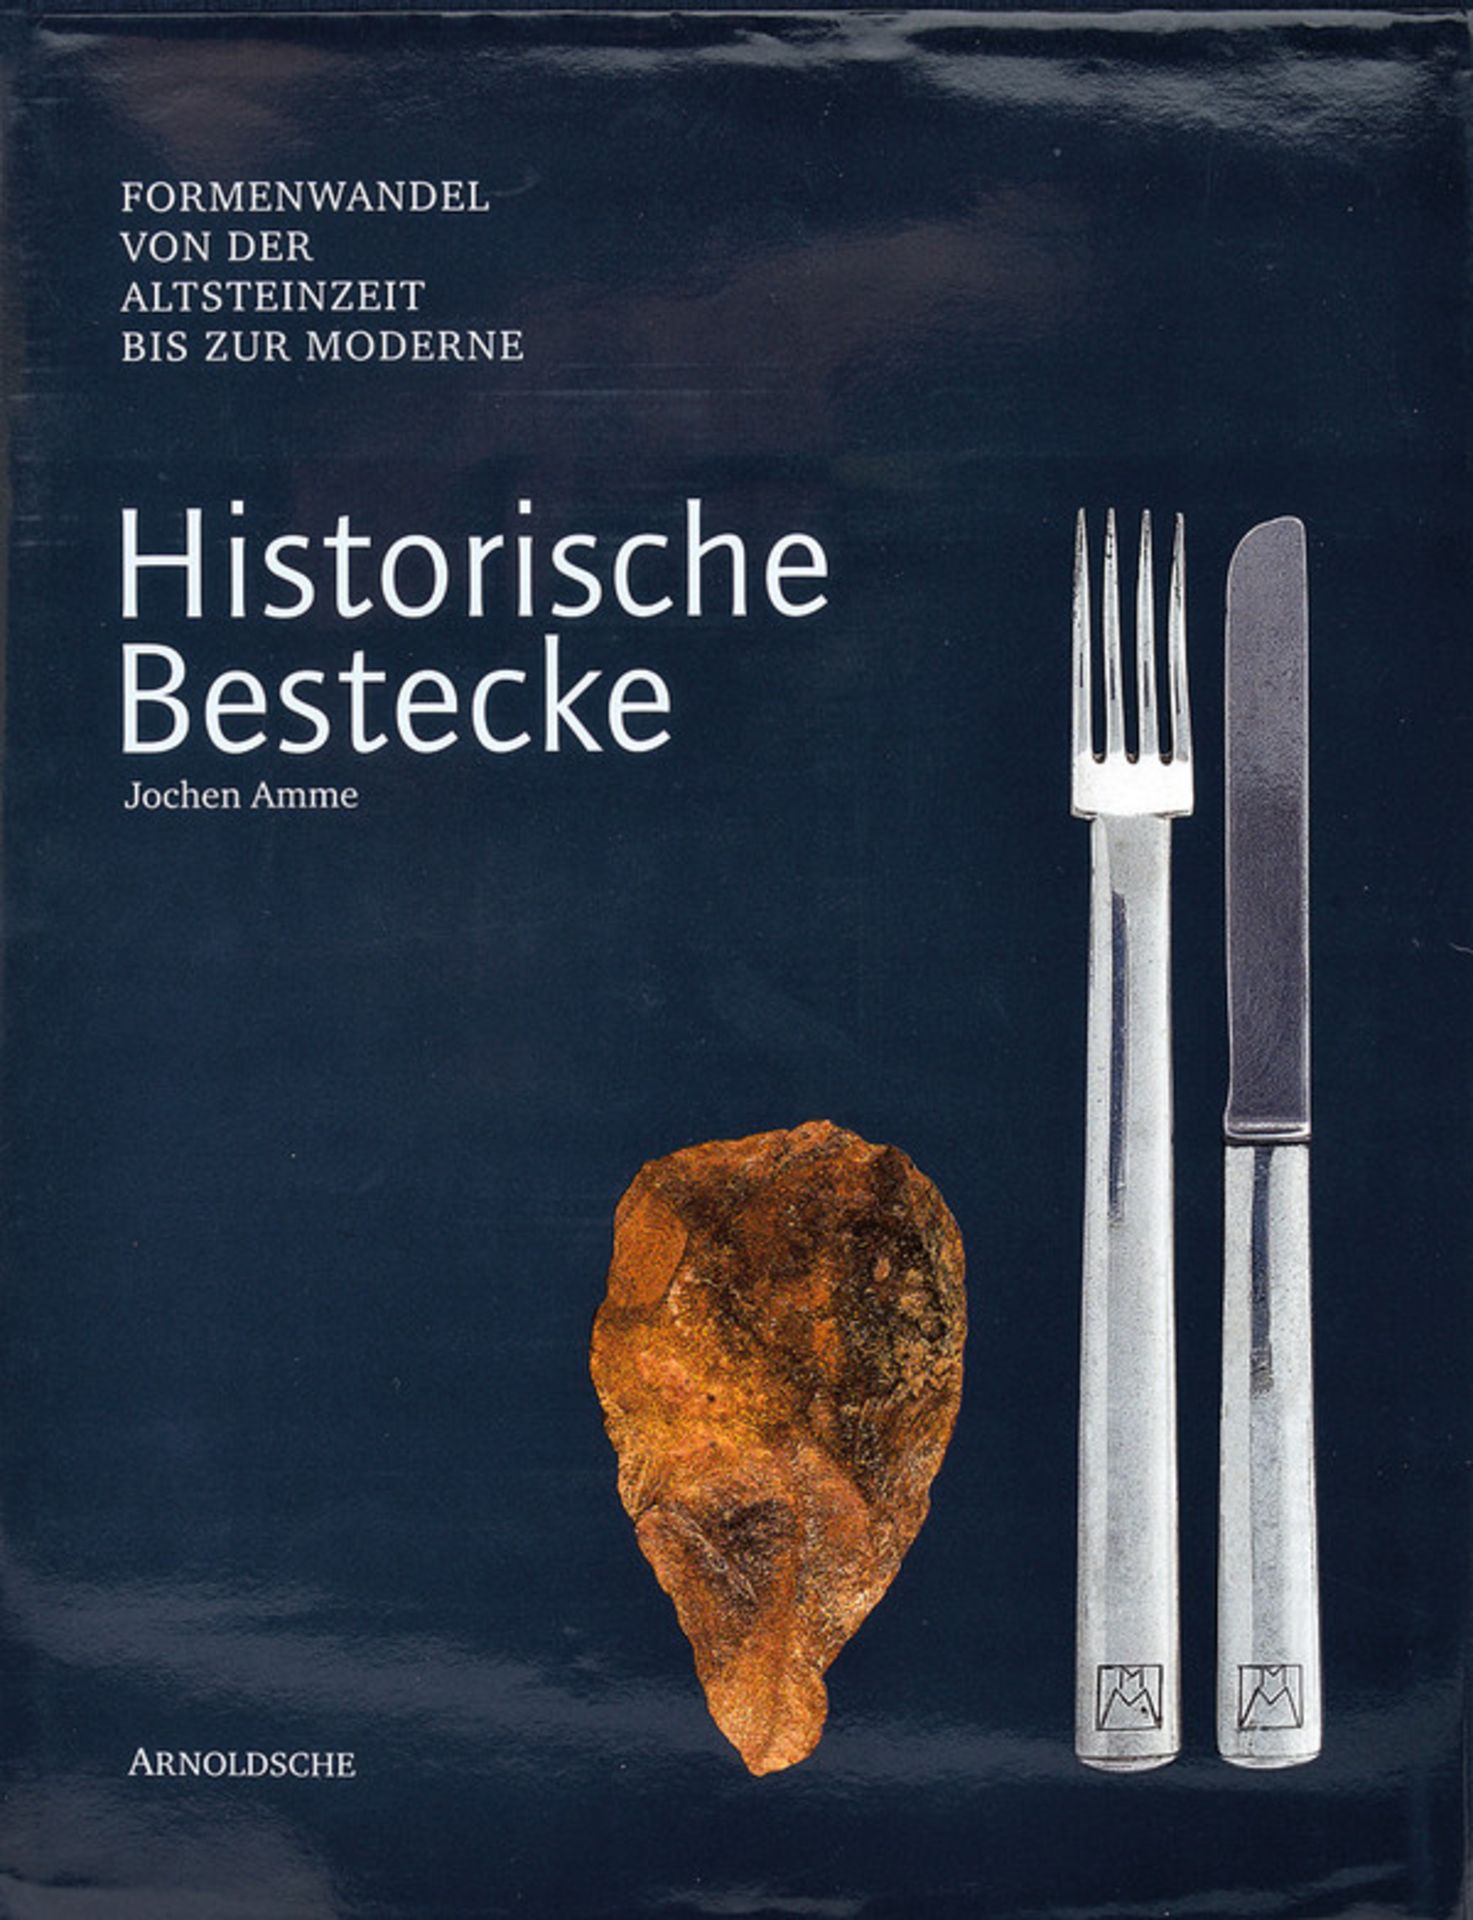 Amme, Jochen dating: circa 2000 provenance: Germany "Historische Bestecke - Formwandel von der